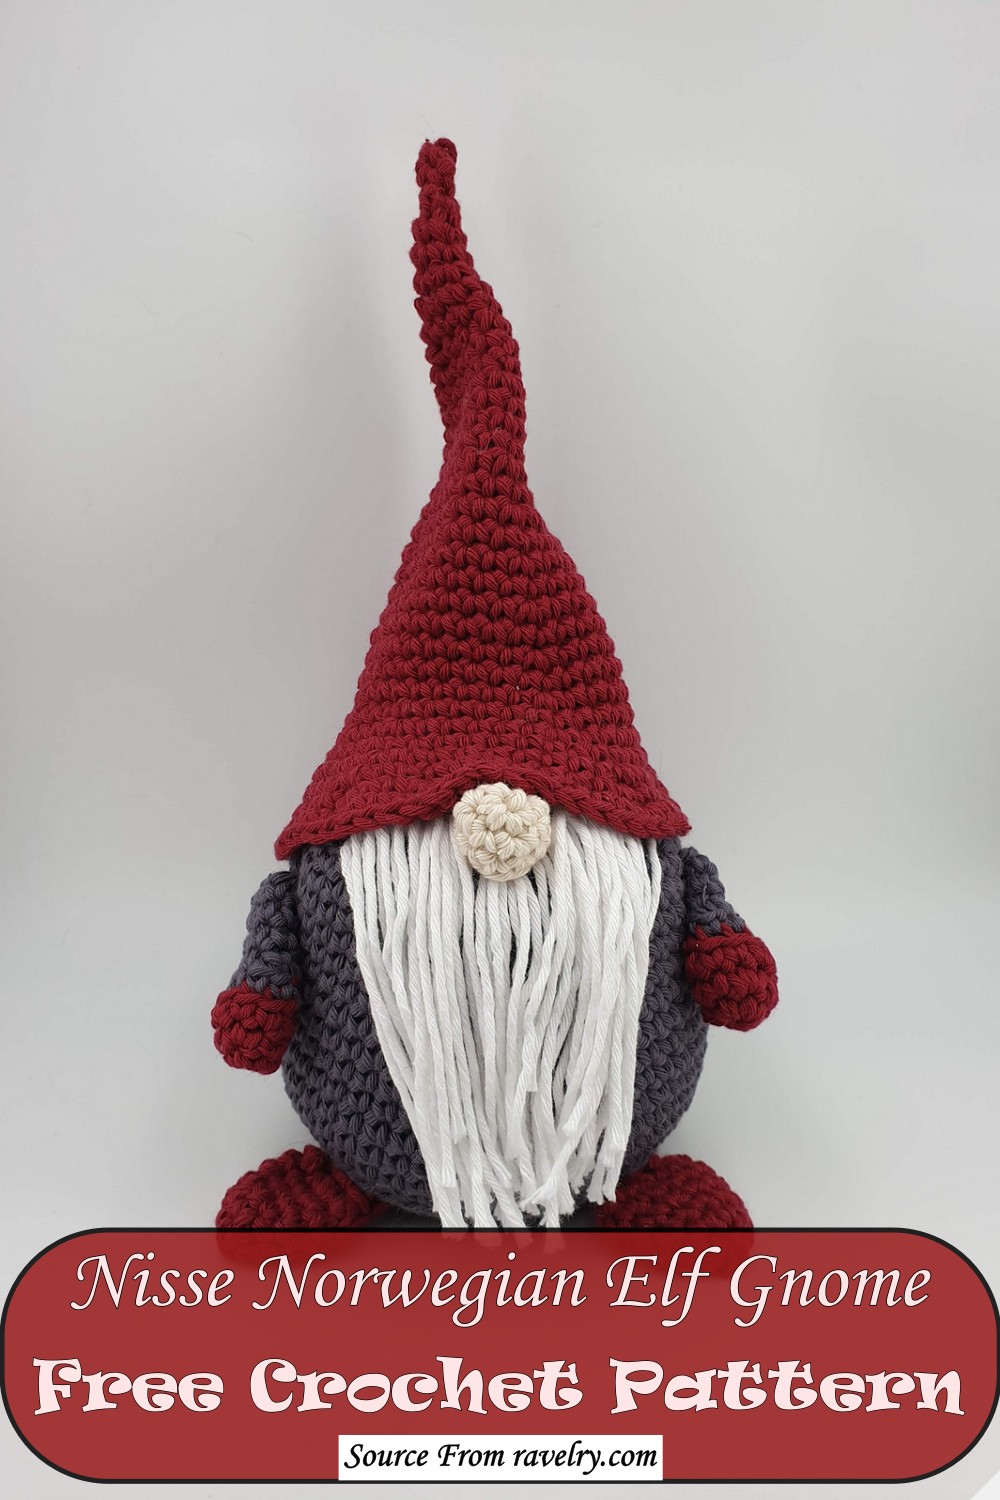 Nisse Norwegian Elf Gnome